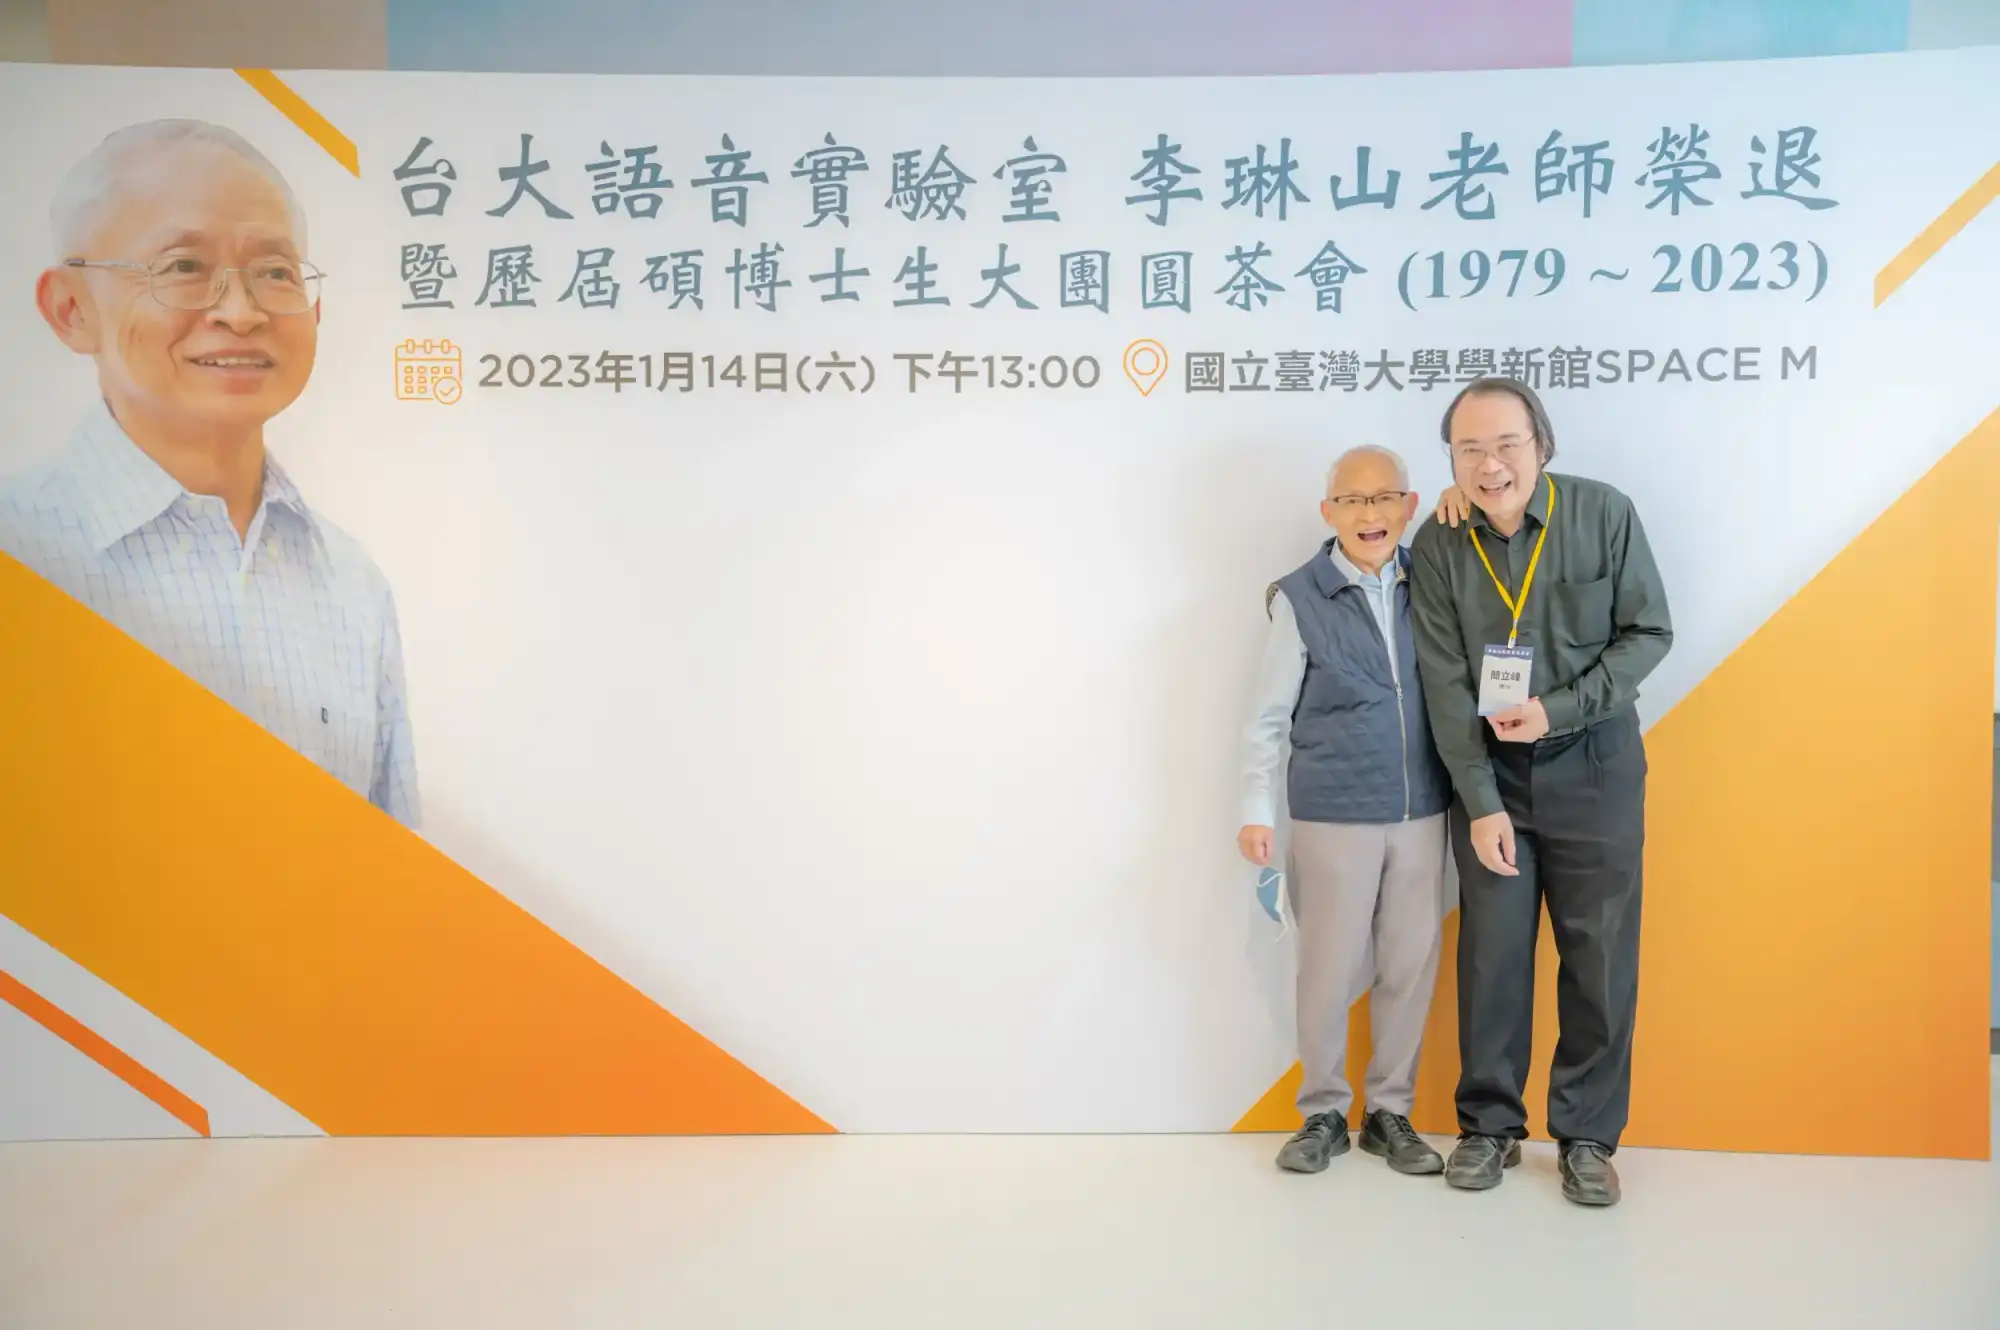 這是台灣 Google 前任掌門人簡立峰博士，師生難得相聚，兩人都高興大笑合不攏嘴。